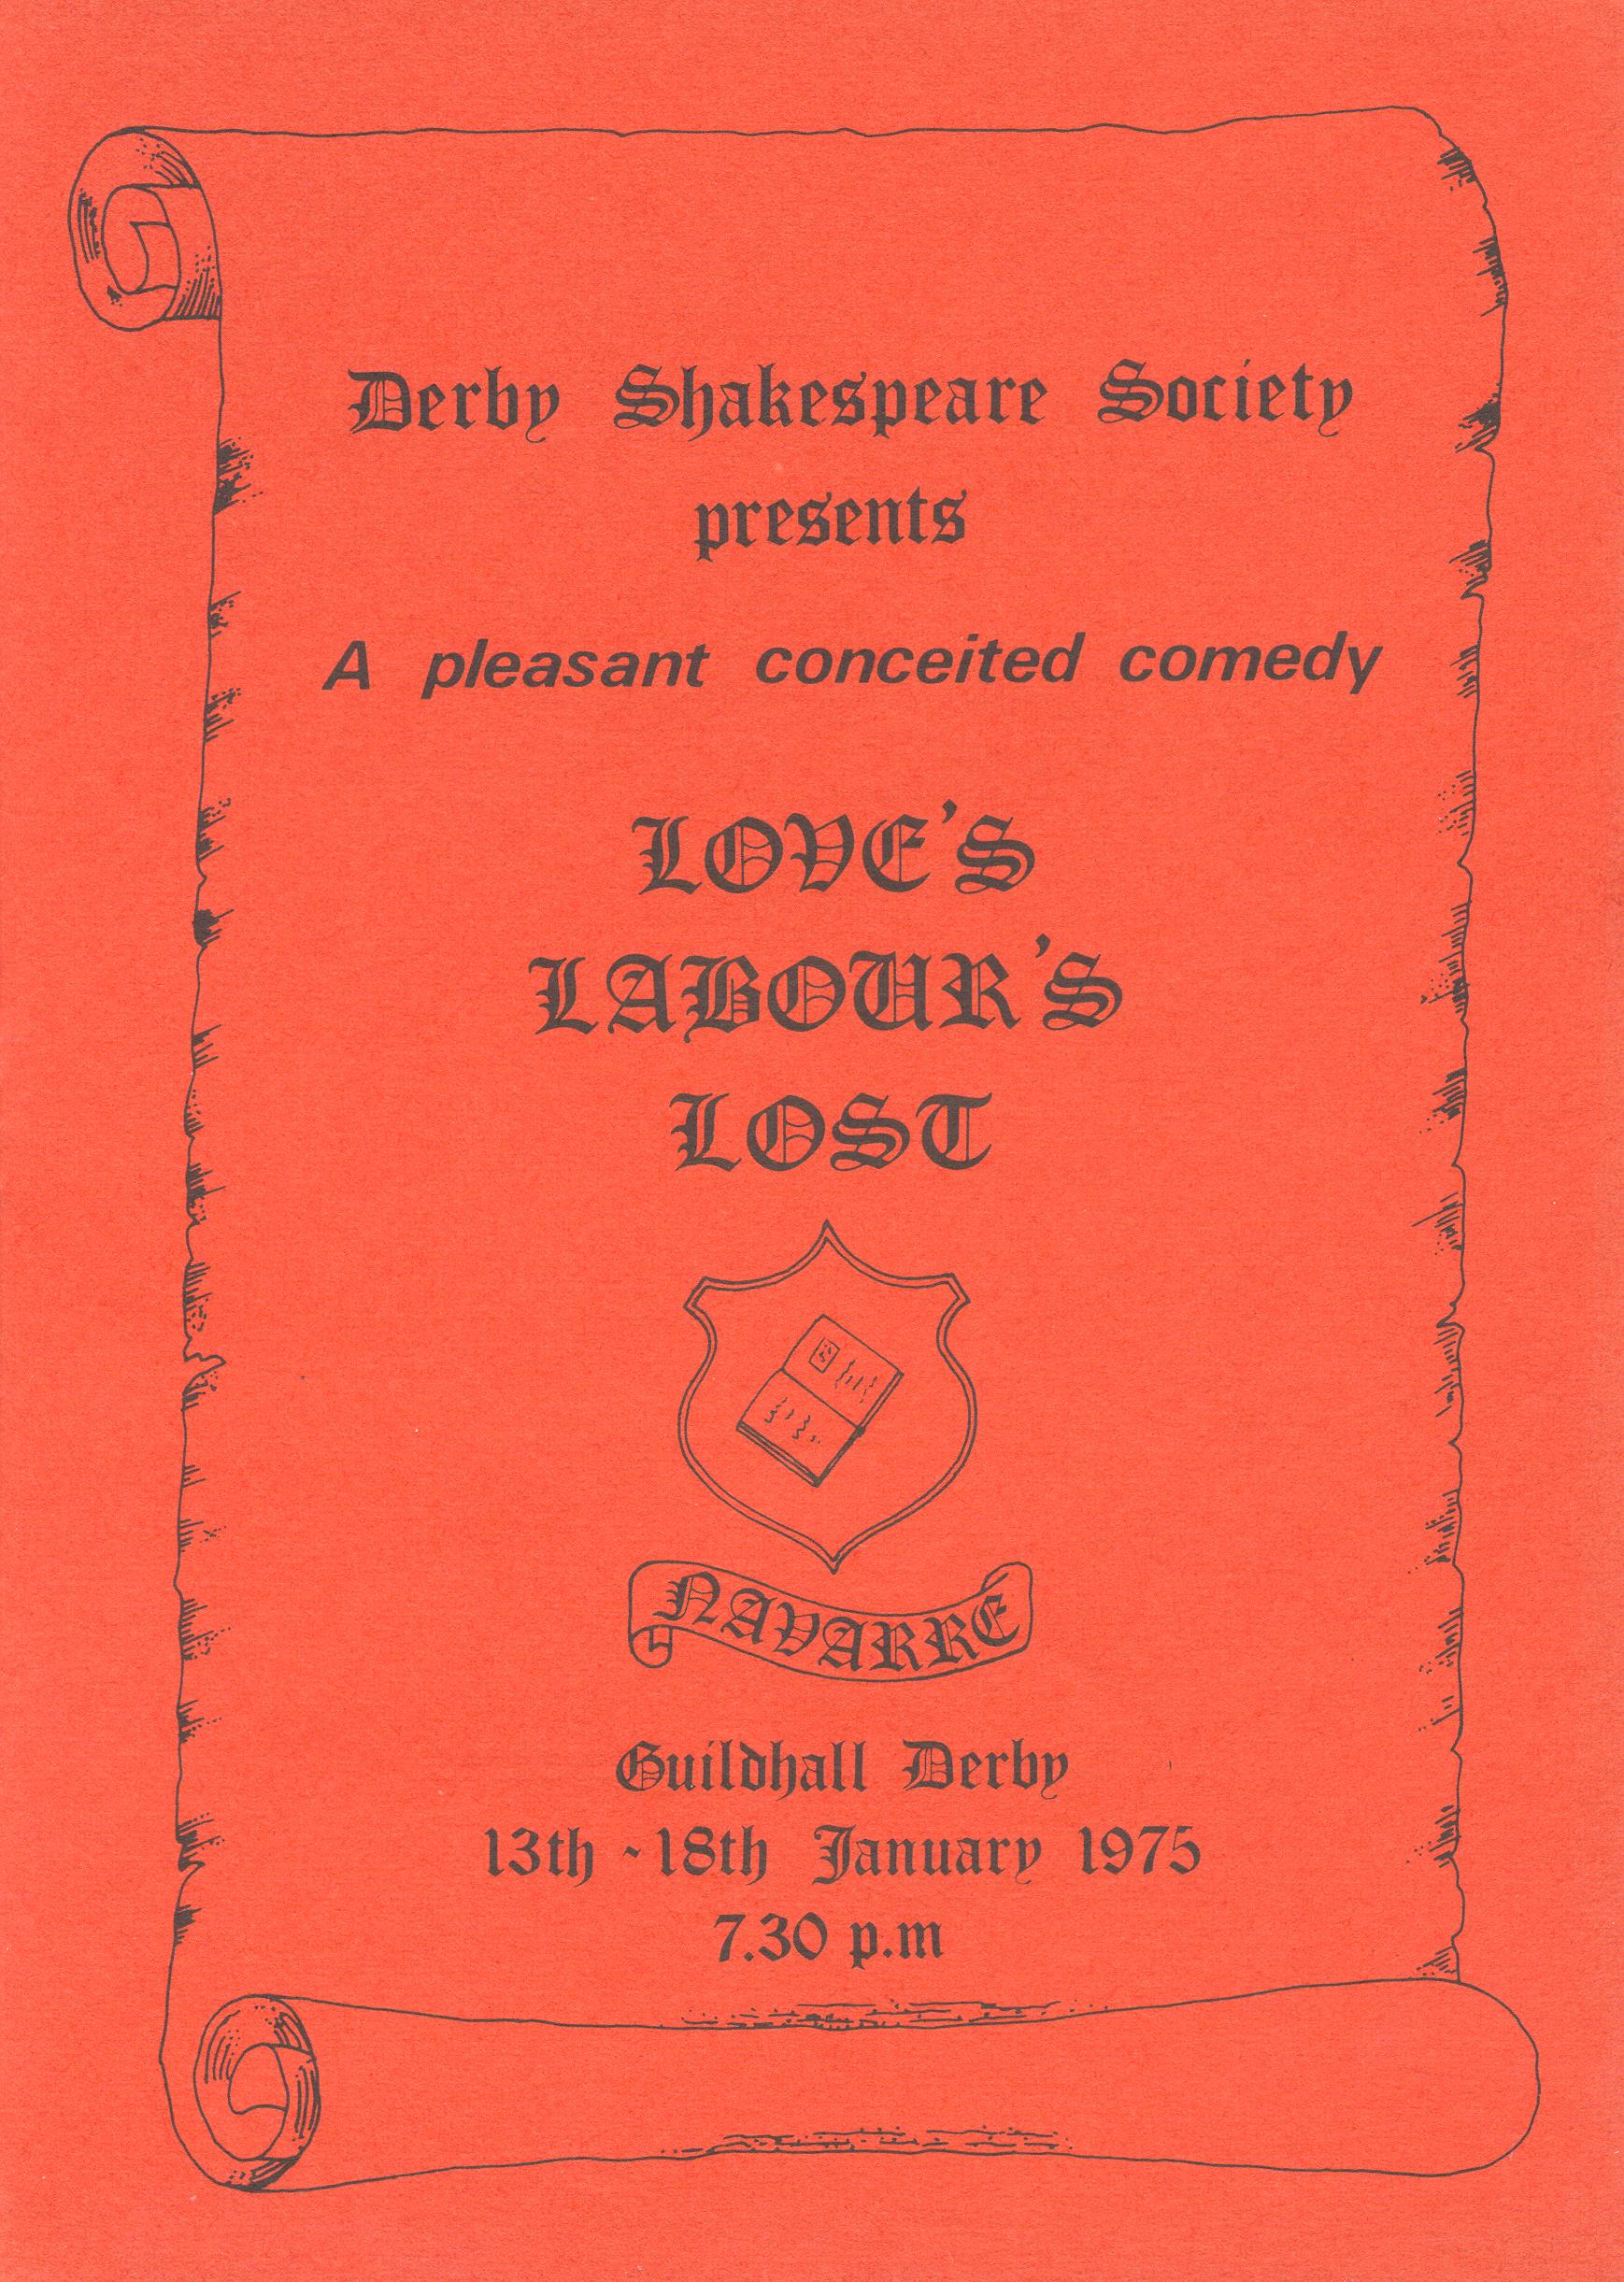 'Love's Labour's Lost' 1975